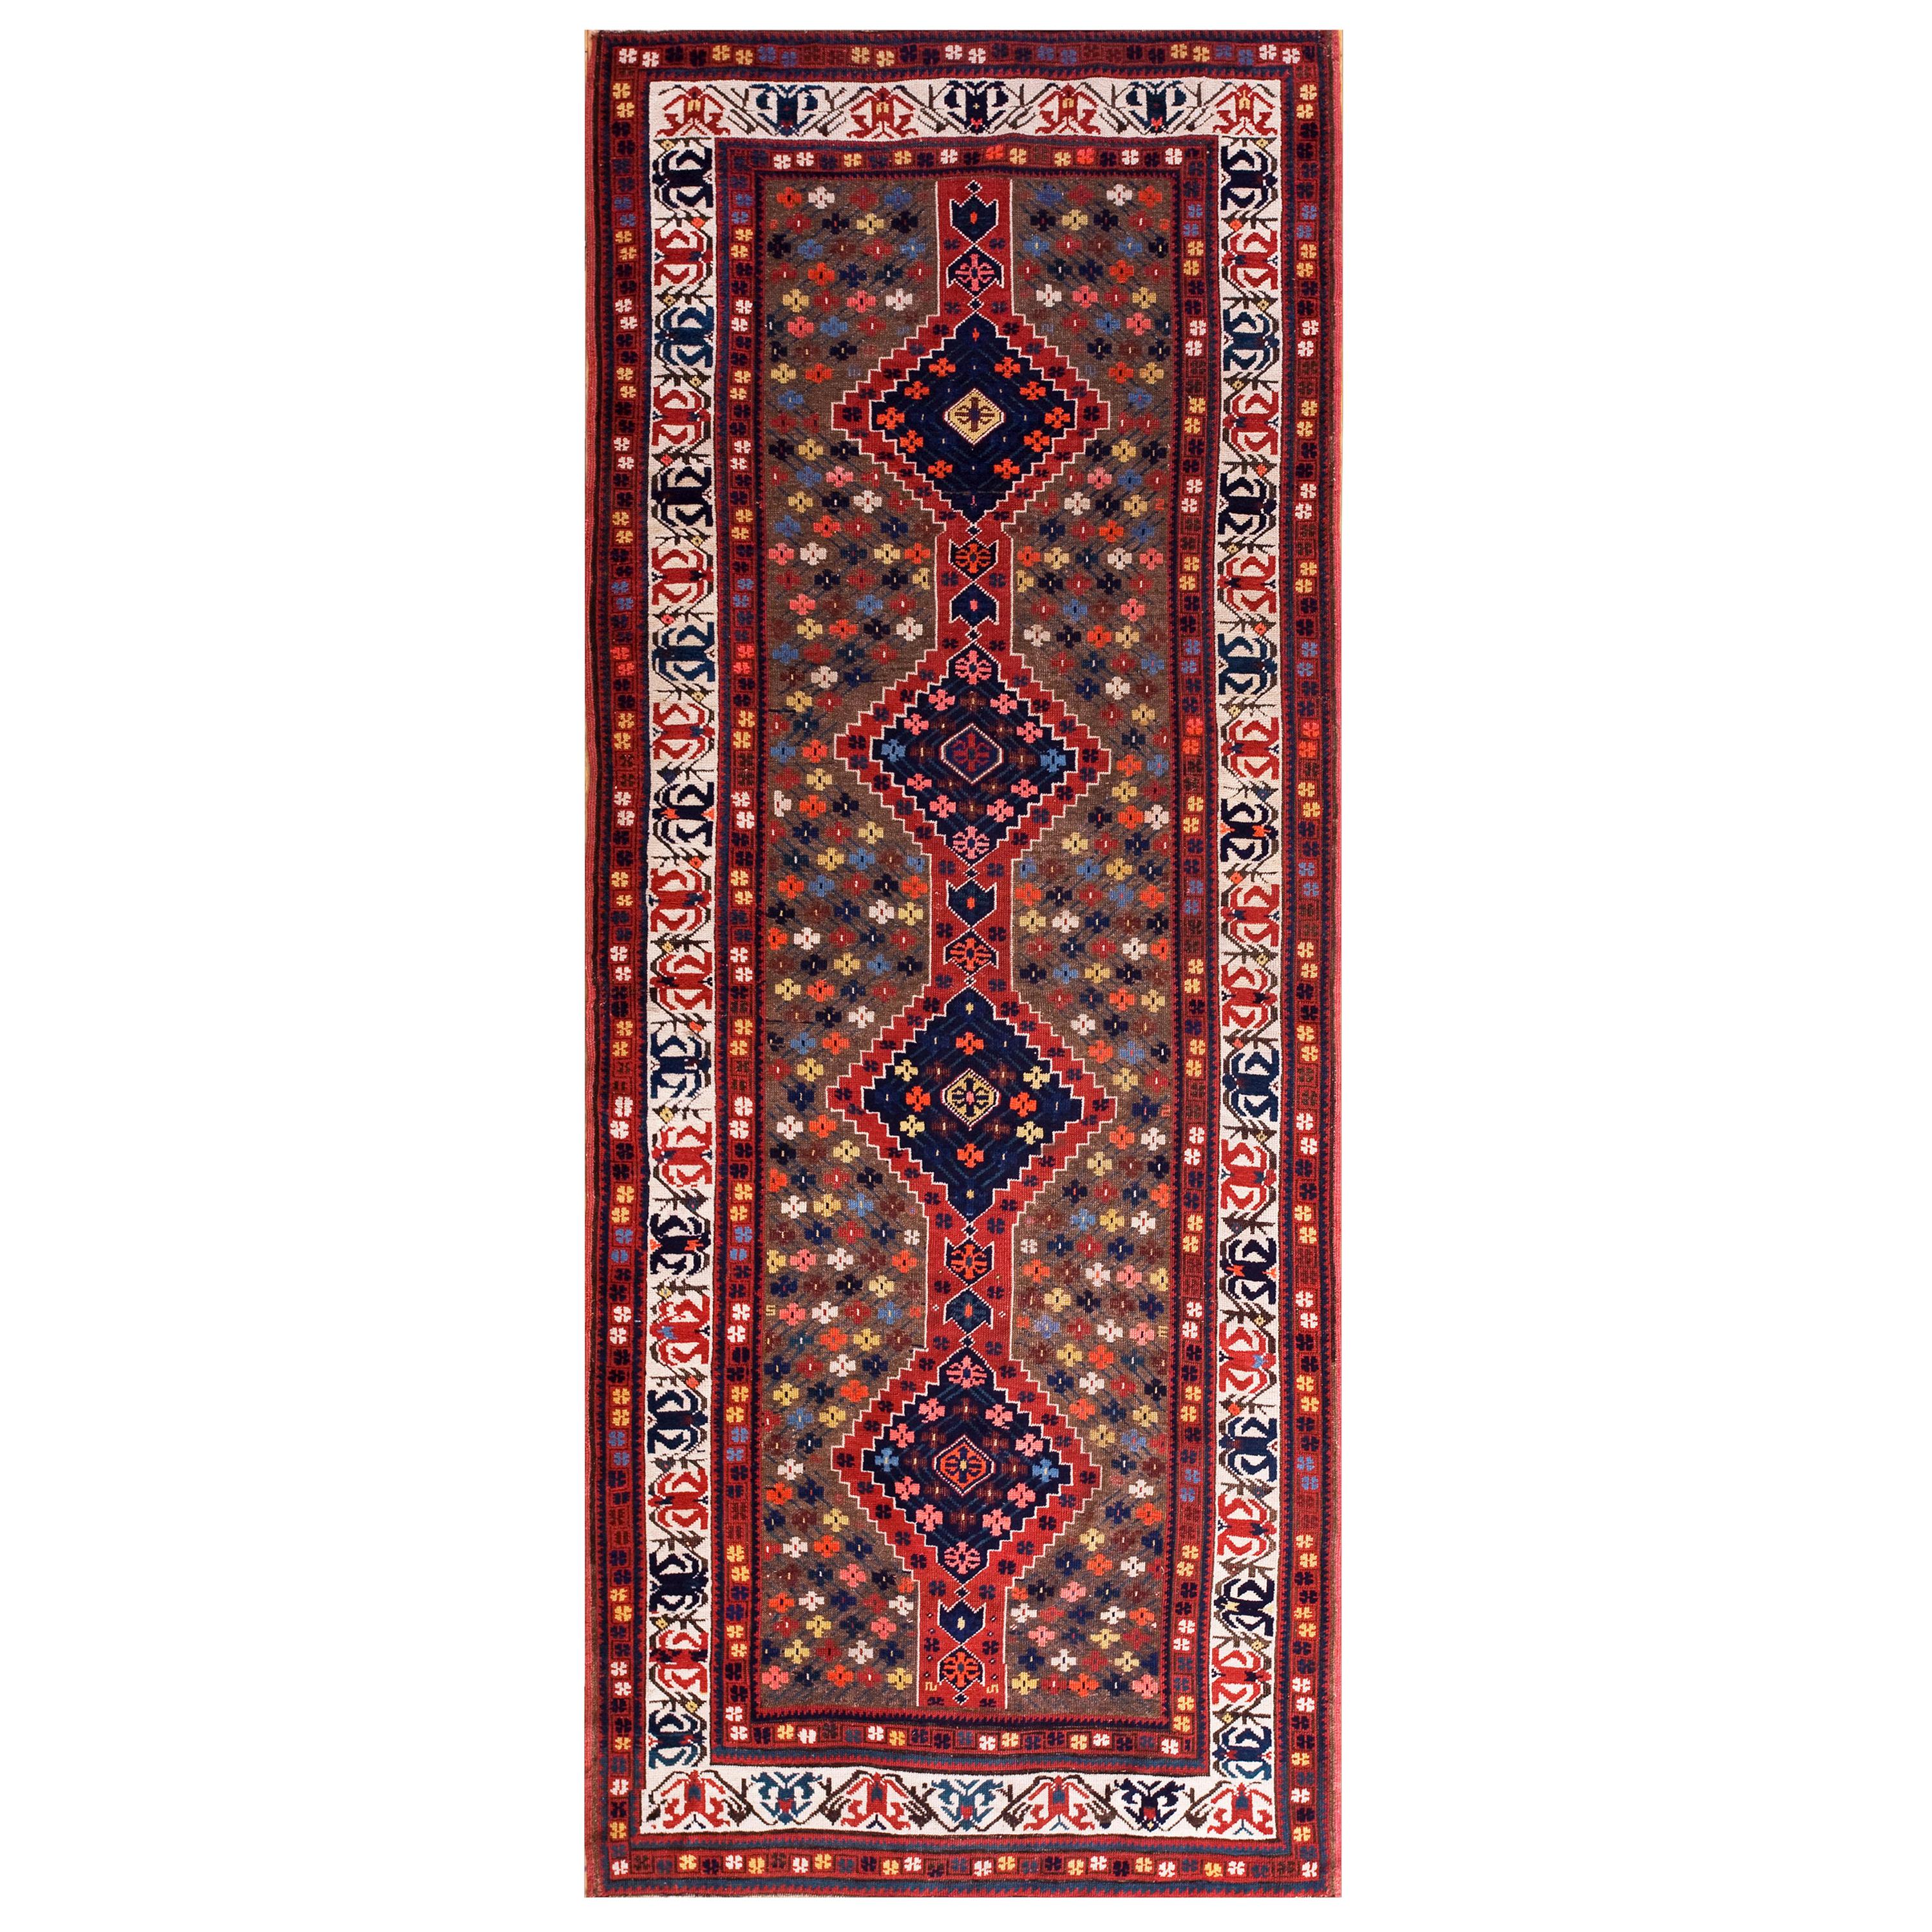 Late 19th Century S. Caucasian Carpet ( 4' x 9'6" - 122 x 290 )